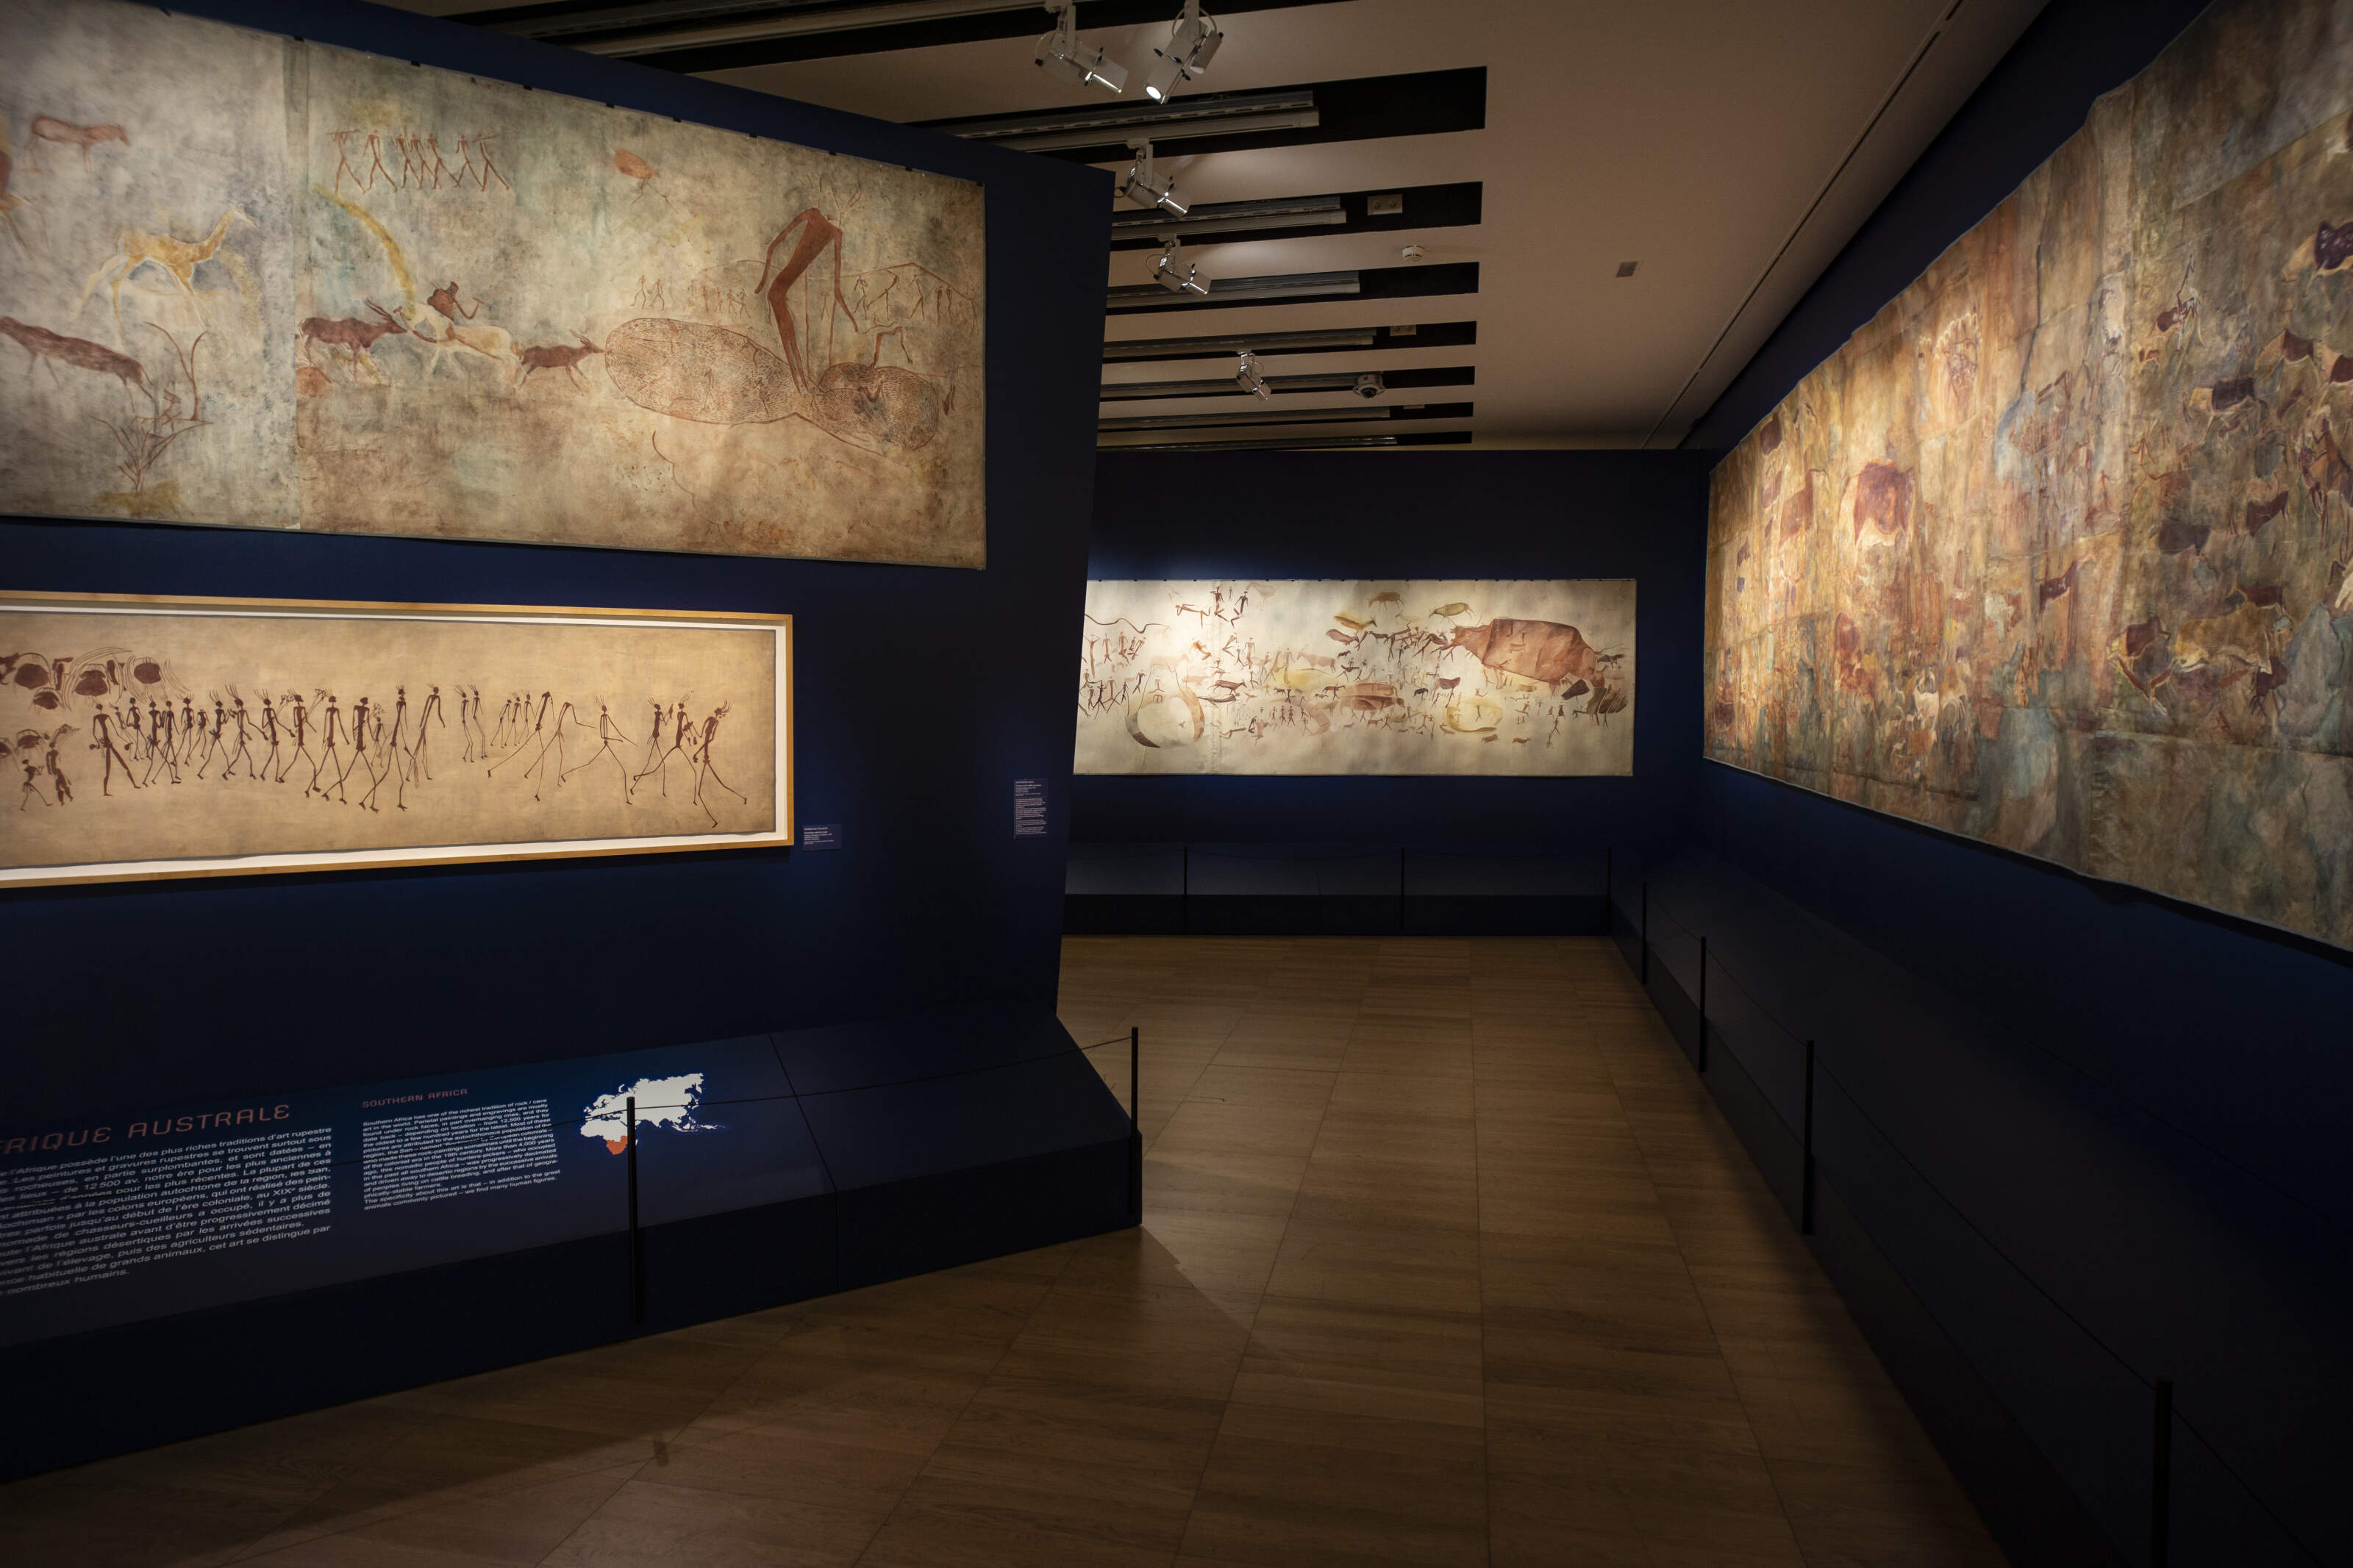 visuel de lexposition prehistomania au musee de lhomme 11 3200x0